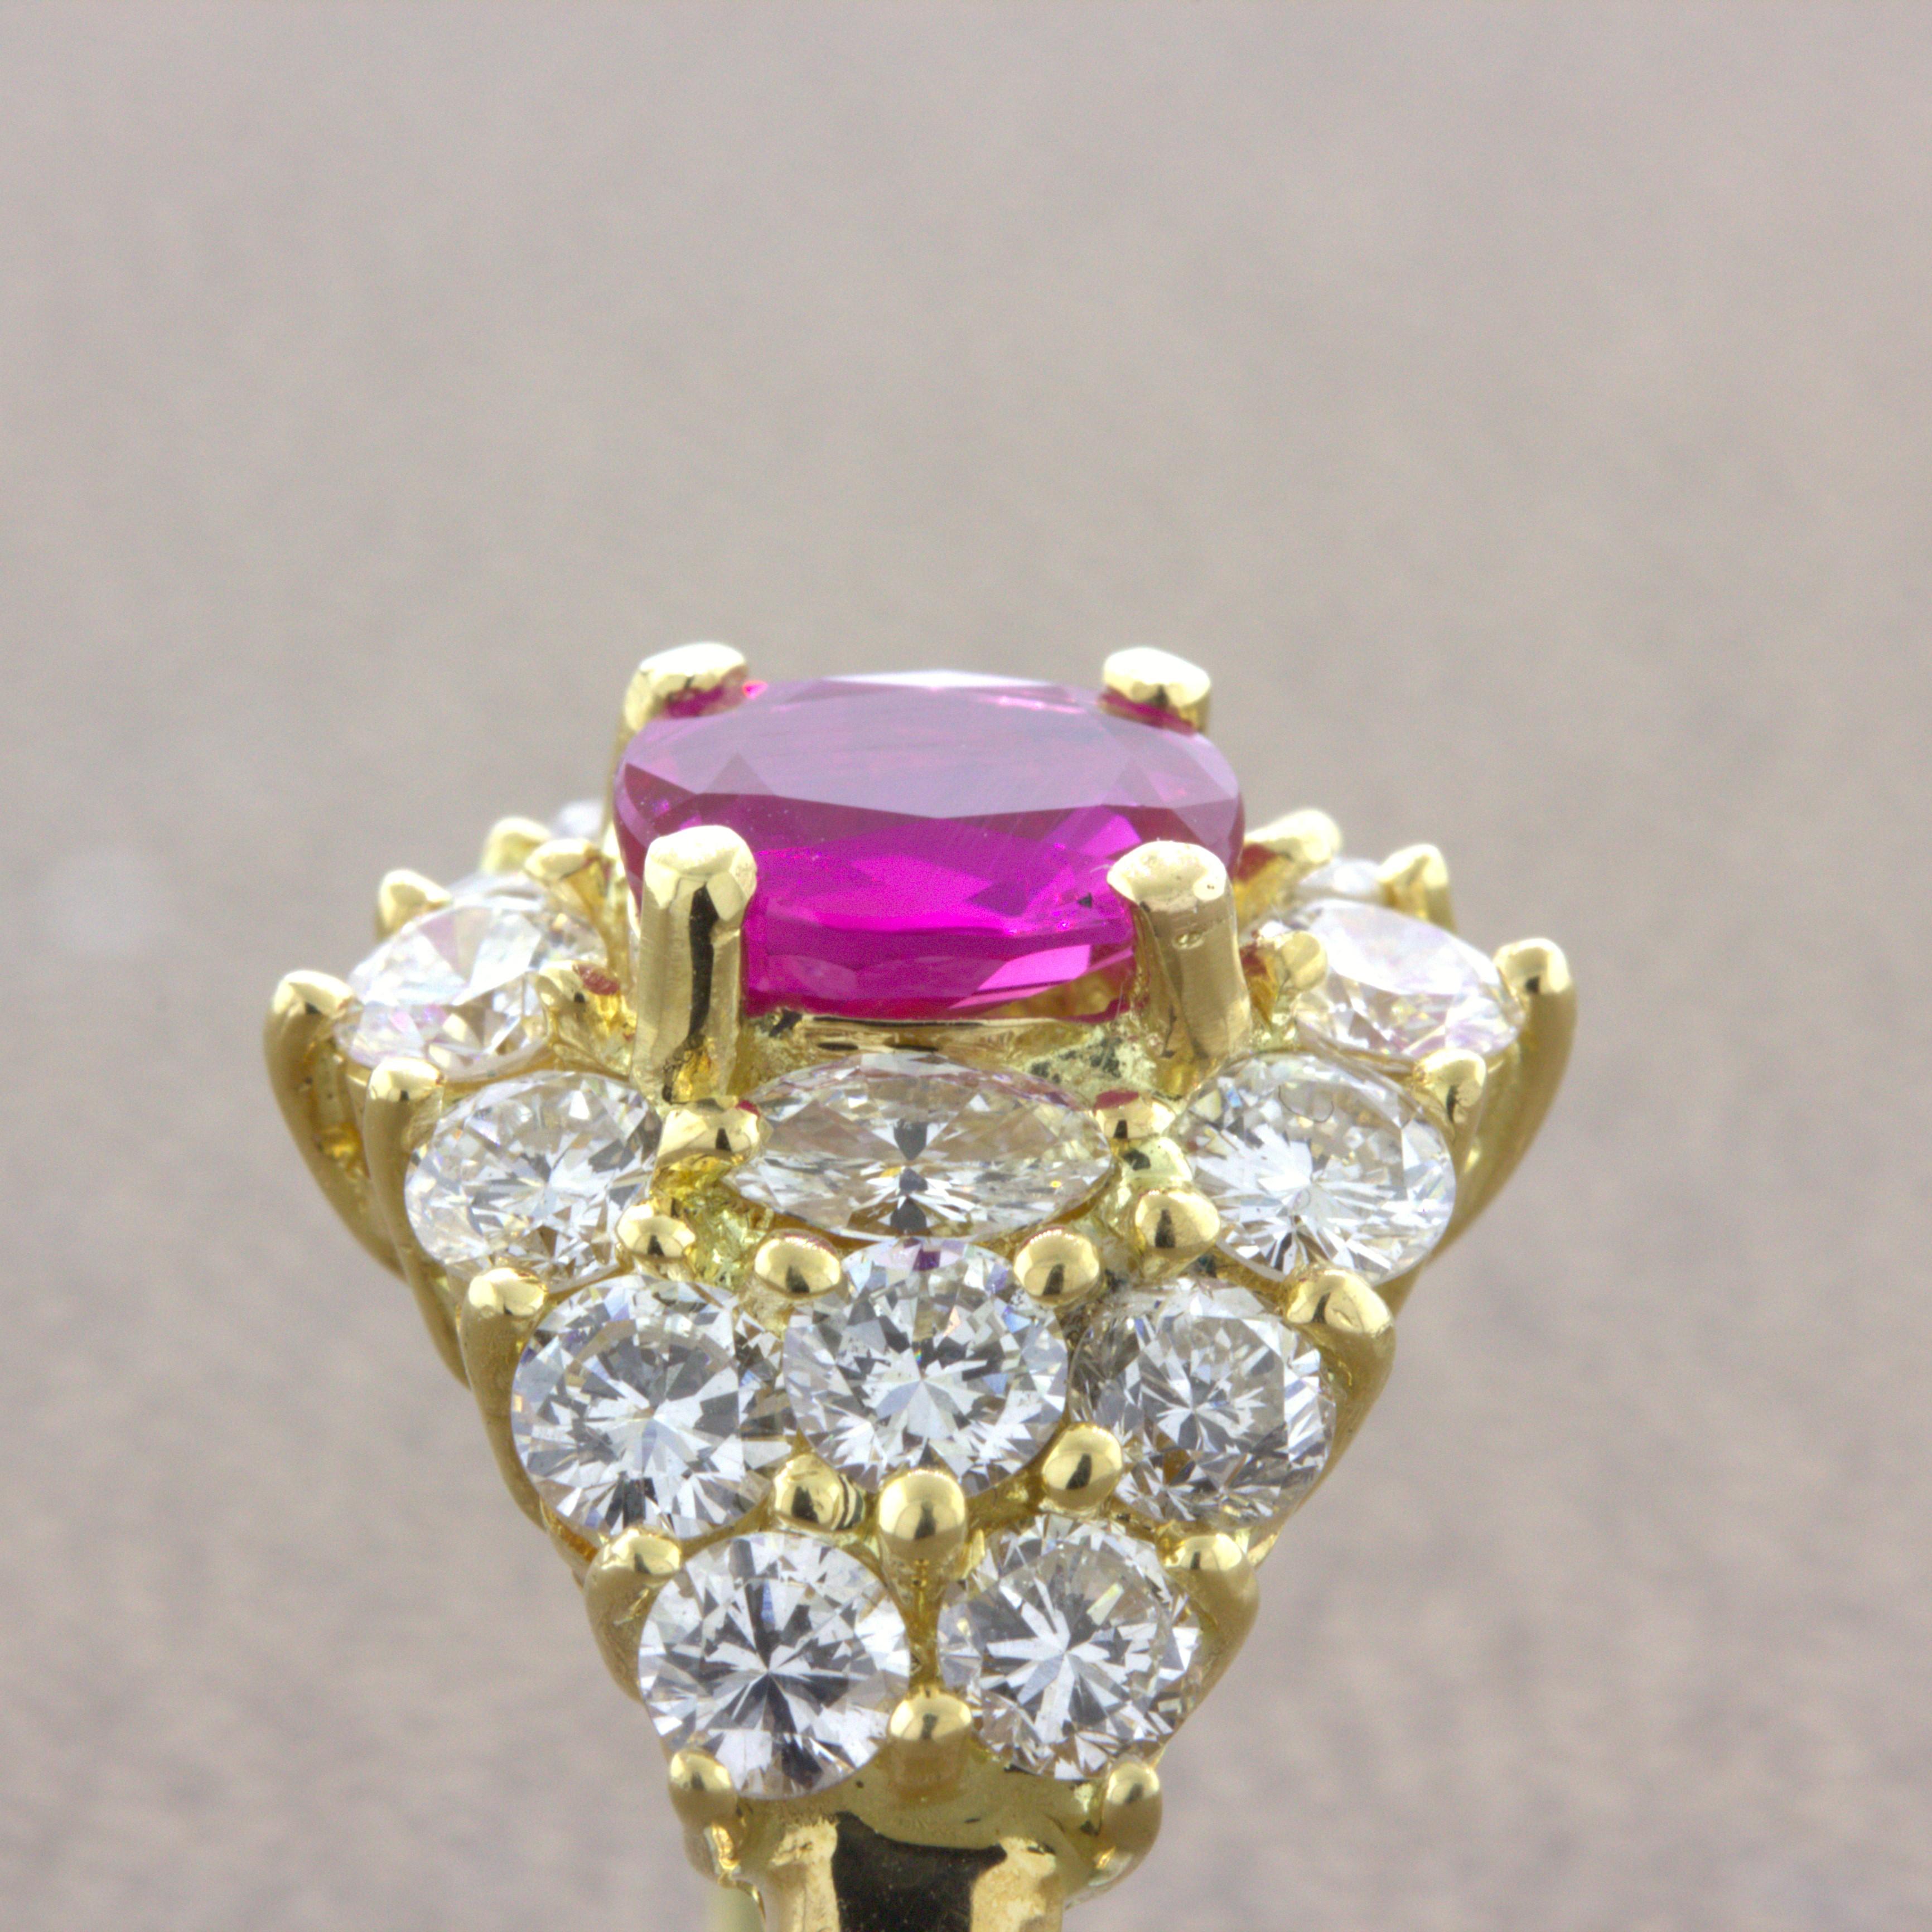 1.09 Carat Burma No-Heat Ruby Diamond 18K Yellow Gold Ring, GIA Certified For Sale 2